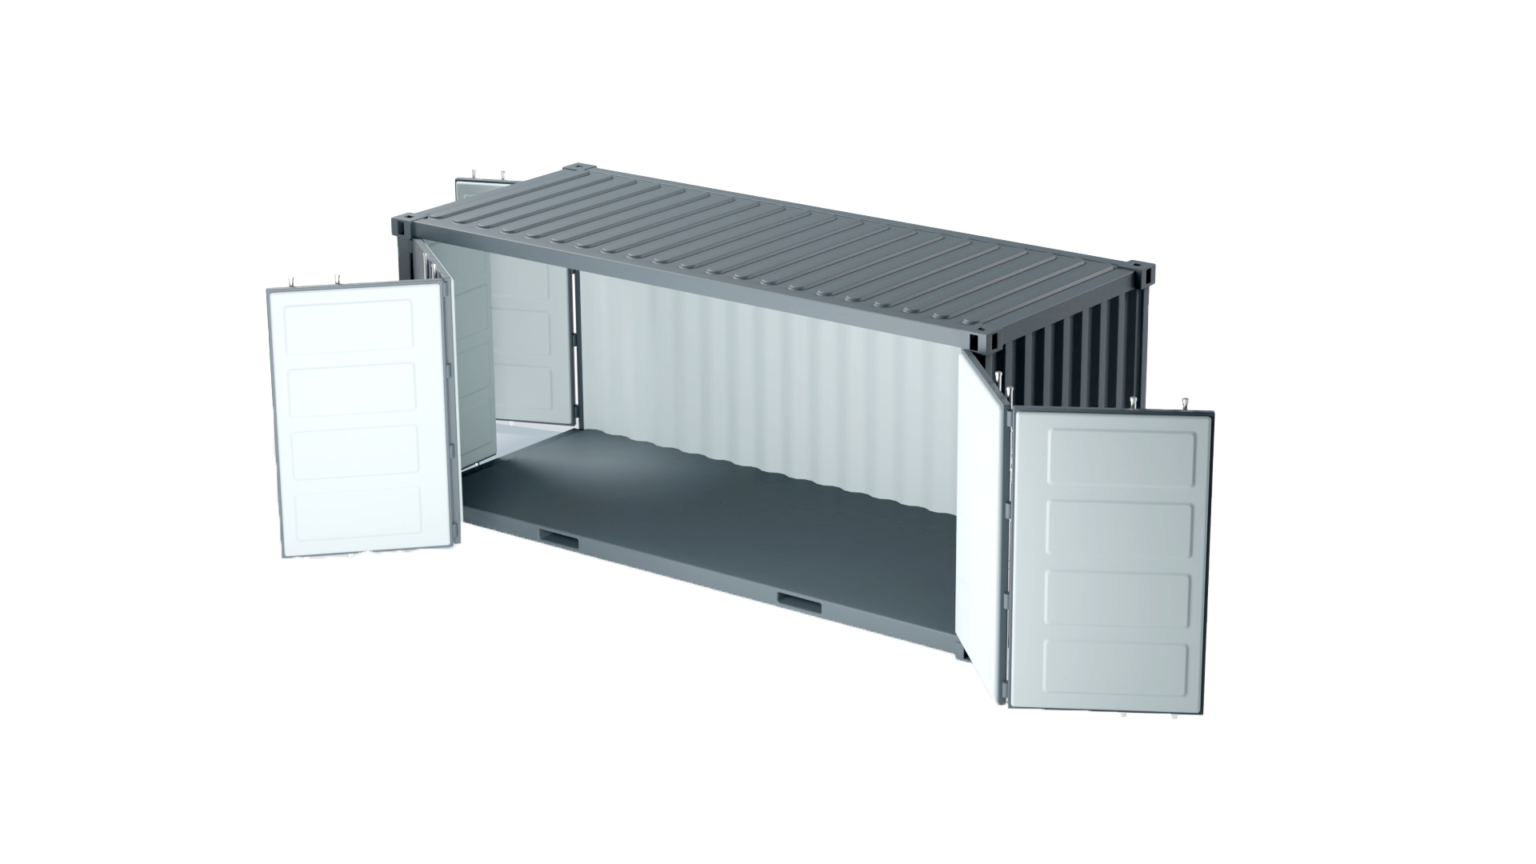 Container maritime 20 pieds openside disponible neuf et occasion pour stockage flexible, adaptable et économique- eurobox_0